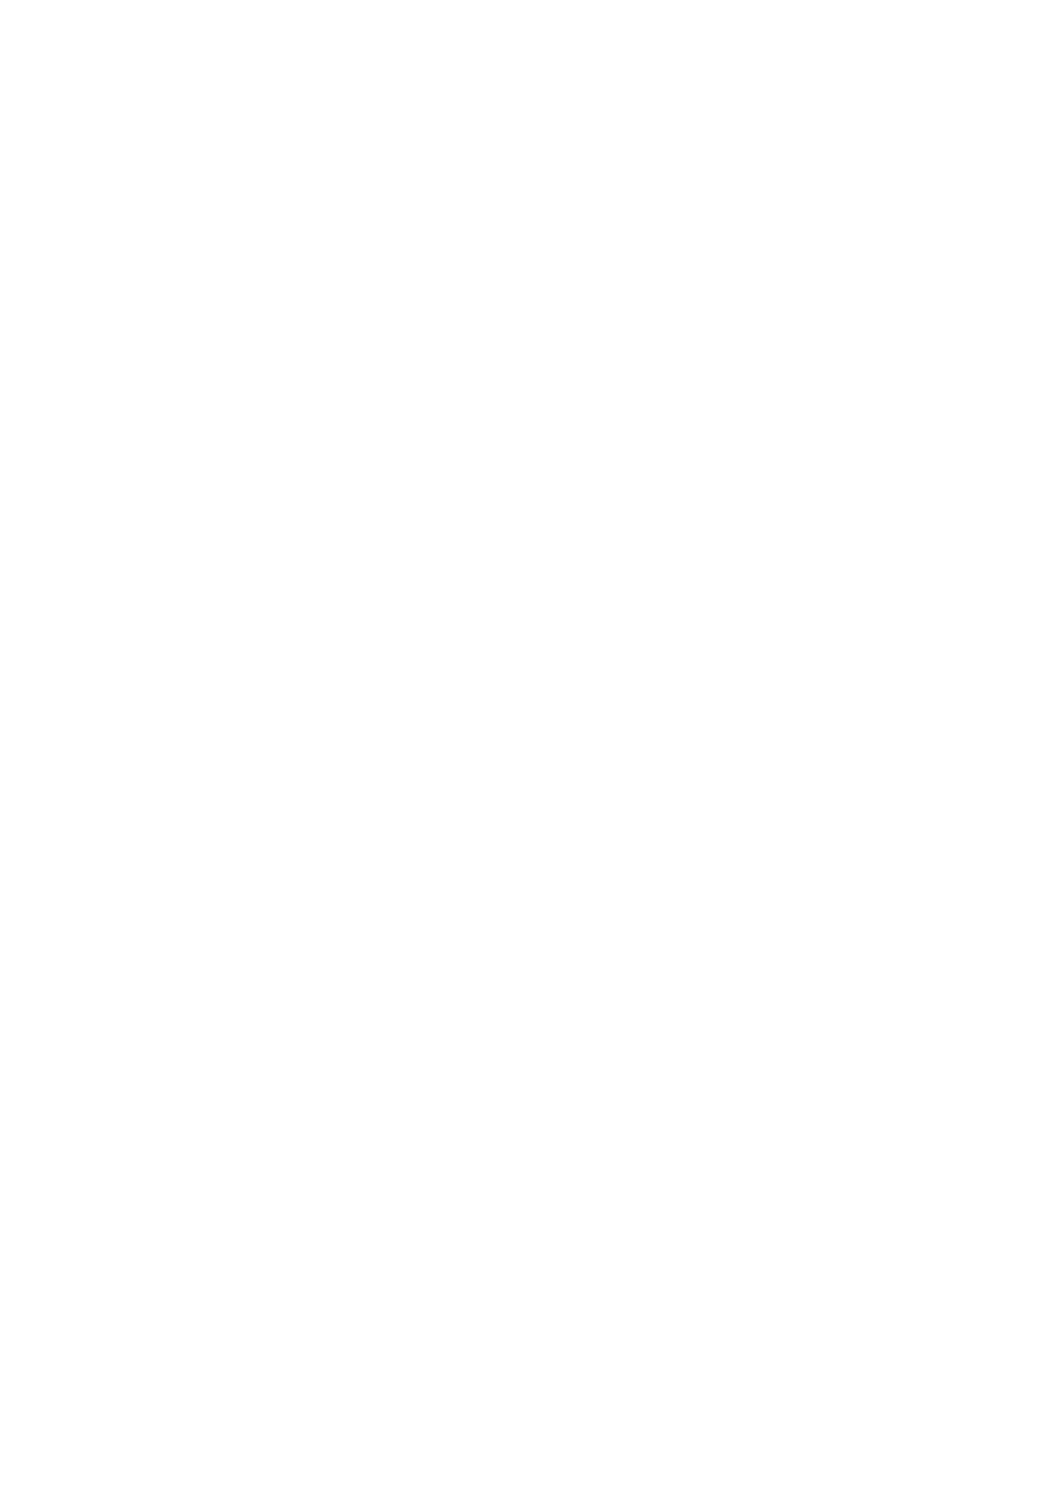 [A.S.Presents (神咲アリア)] アドミラル・ヒッパーの堕としかた (アズールレーン) [DL版]